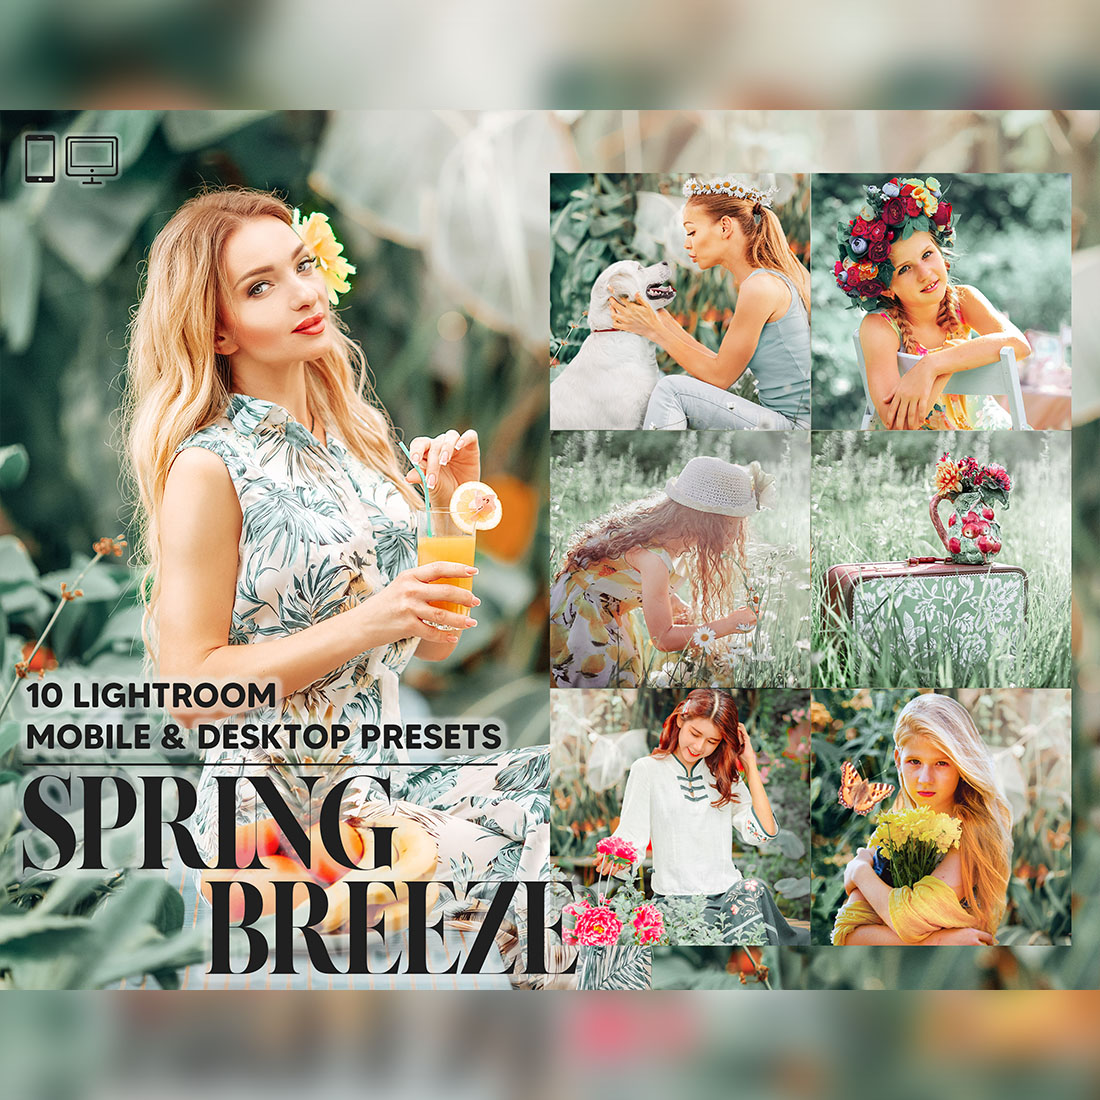 10 Spring Breeze Lightroom Presets, Bright Mobile Preset, Warm Girl Desktop, Lifestyle Portrait Theme Instagram LR Filter DNG Best Green cover image.